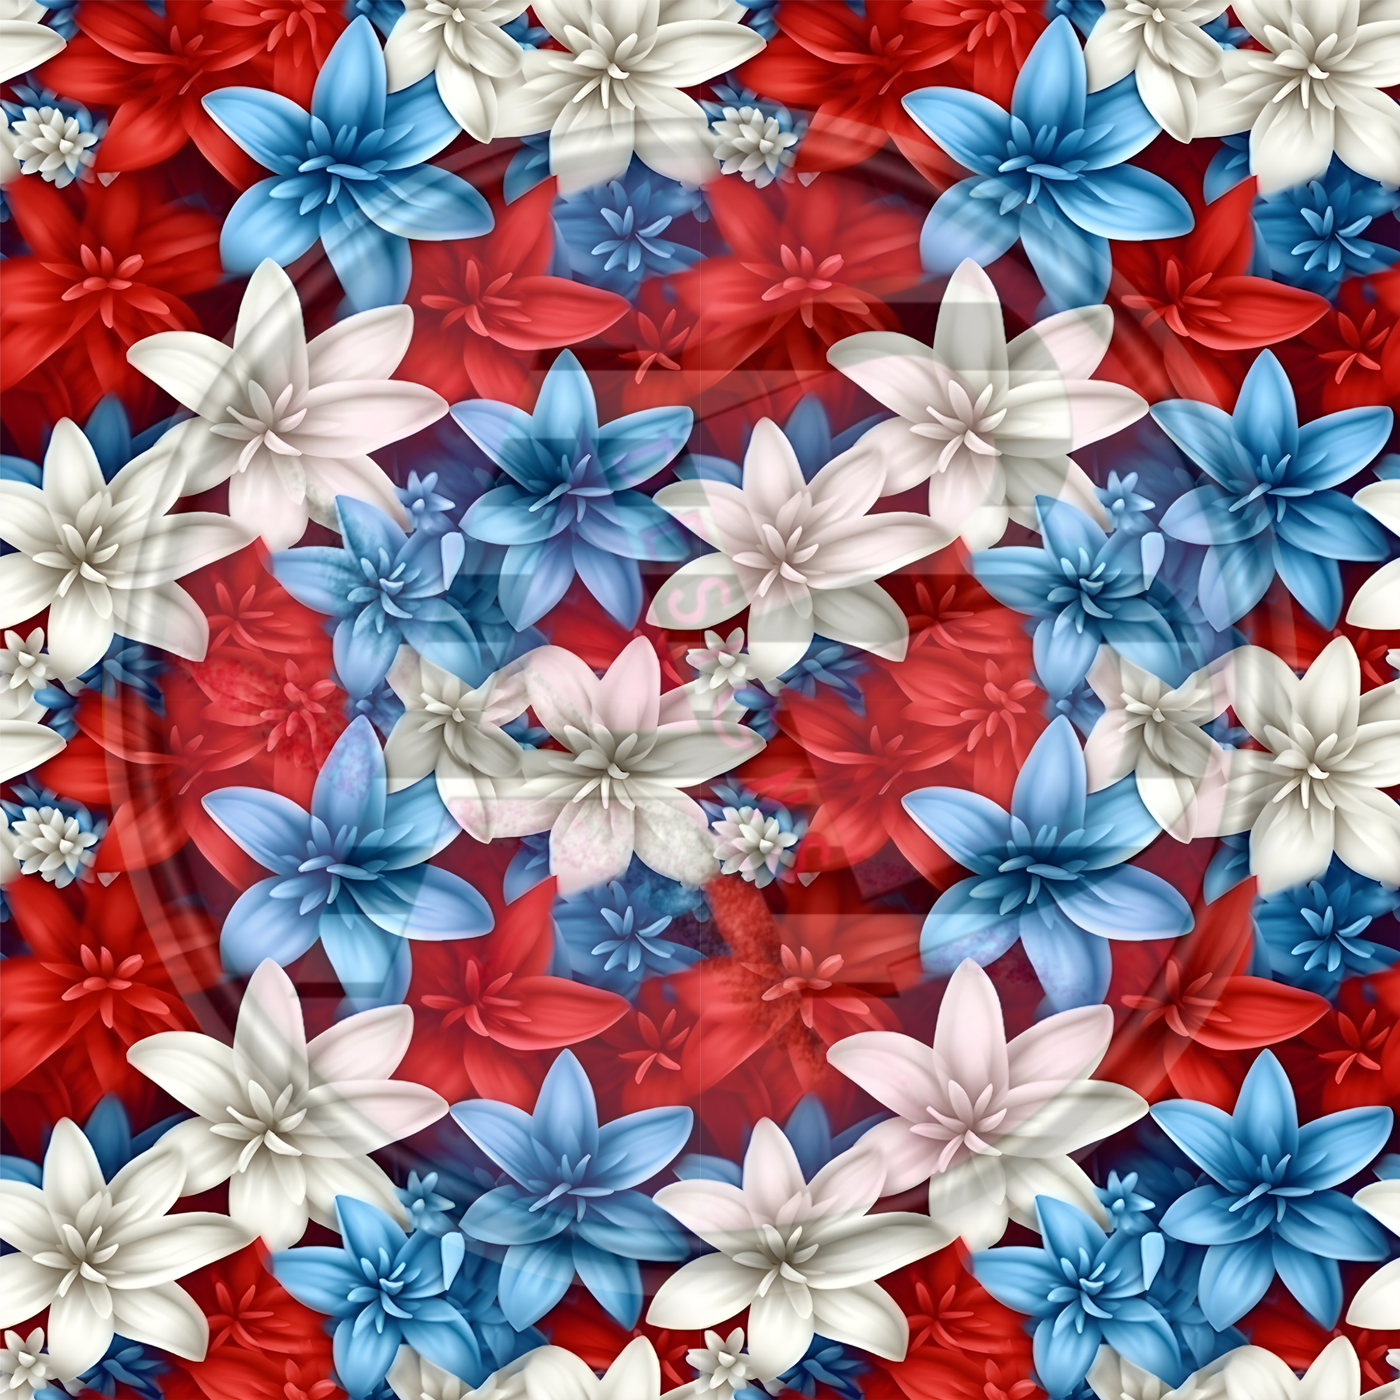 Adhesive Patterned Vinyl - Patriotic Floral 07